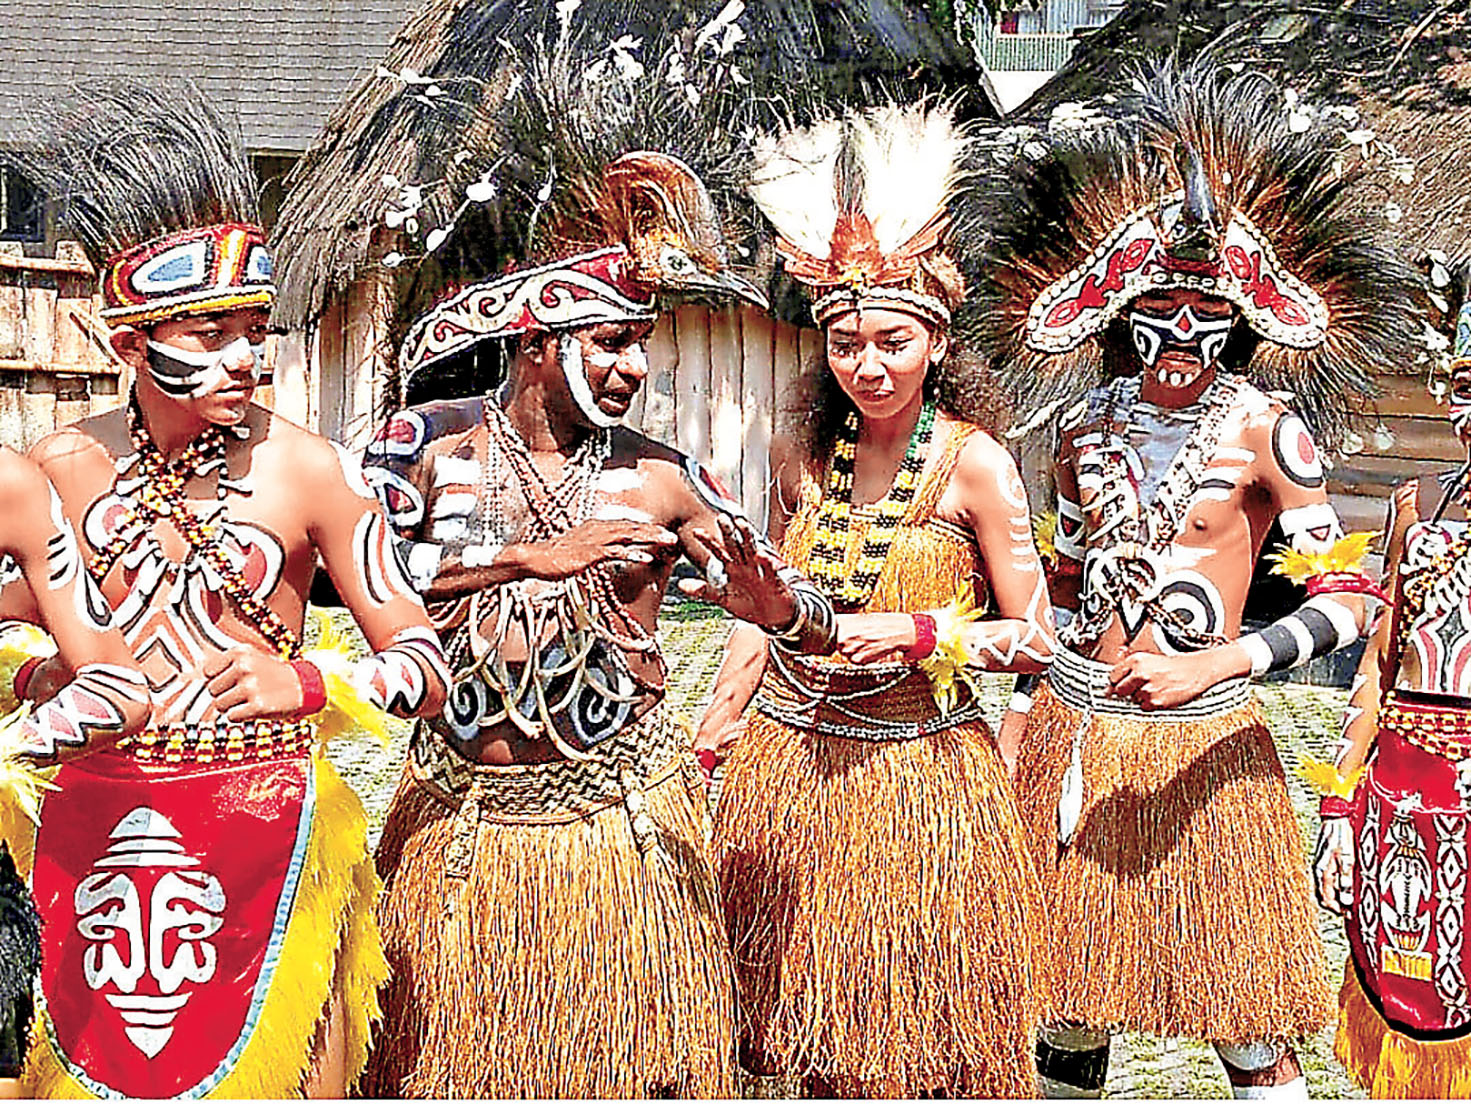 ■縮影公園內有不同省區的印尼文化表演。